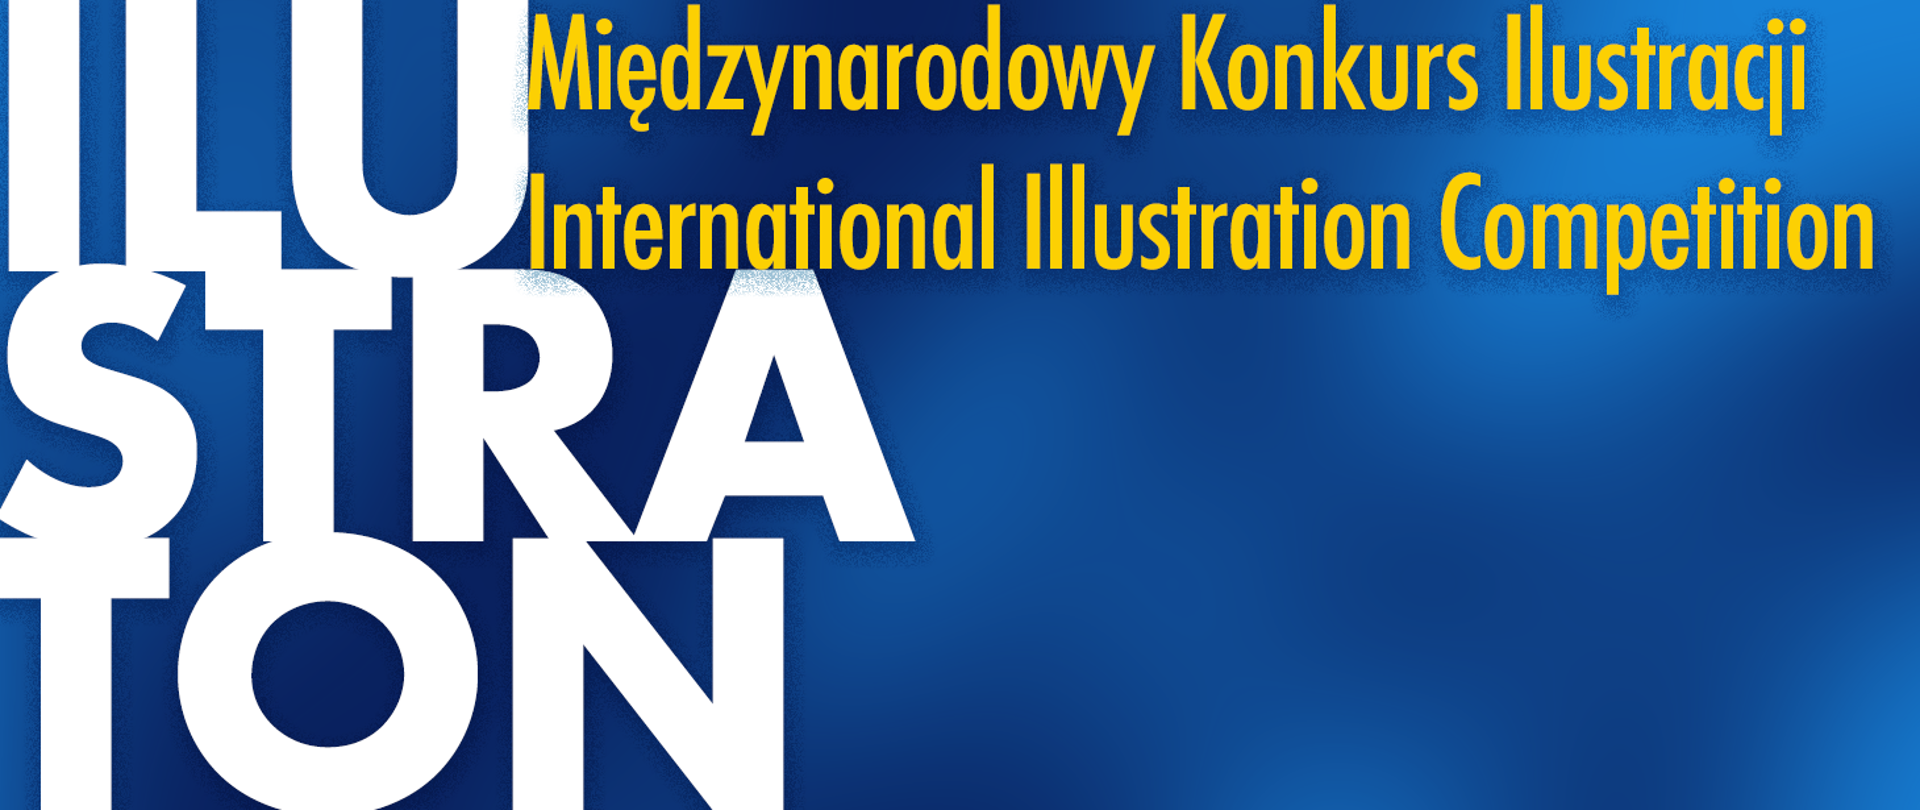 Ilustraton napis na niebieskim tle z dopiskiem po polsku i angielsku Międzynarodowy konkurs ilustracji